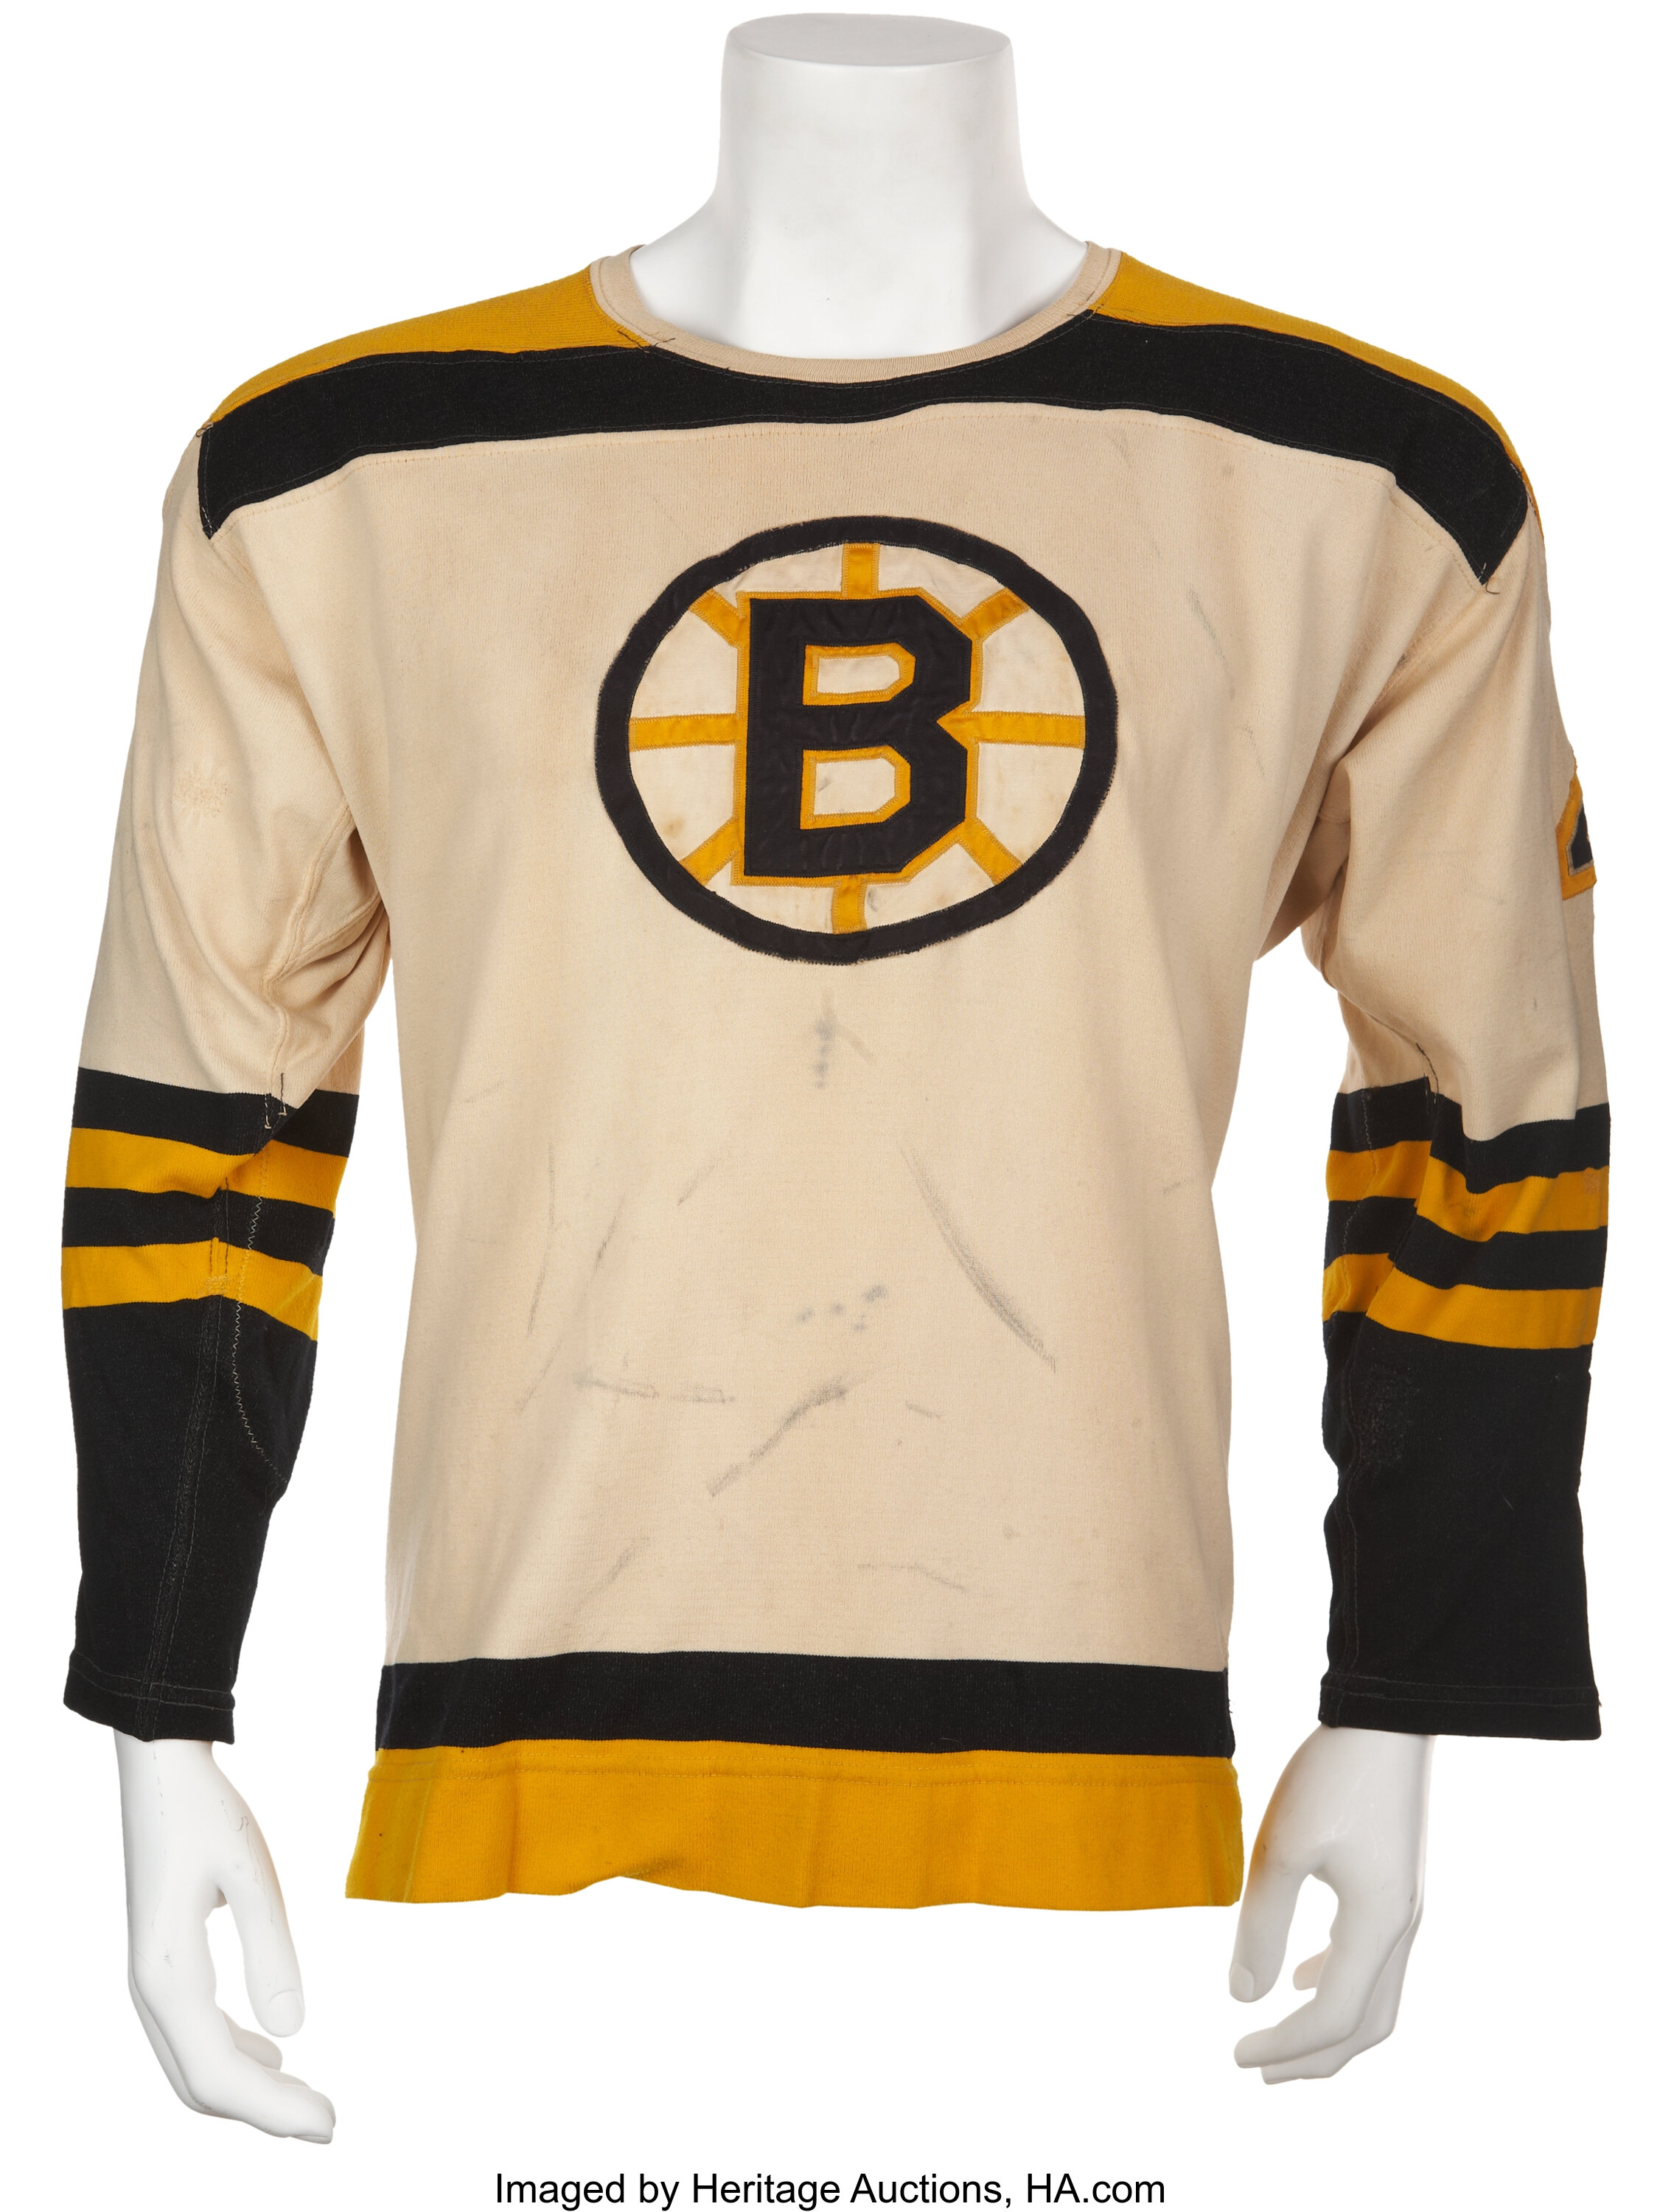 1967-68 Pittsburgh Penguins Game Worn Jerseys 